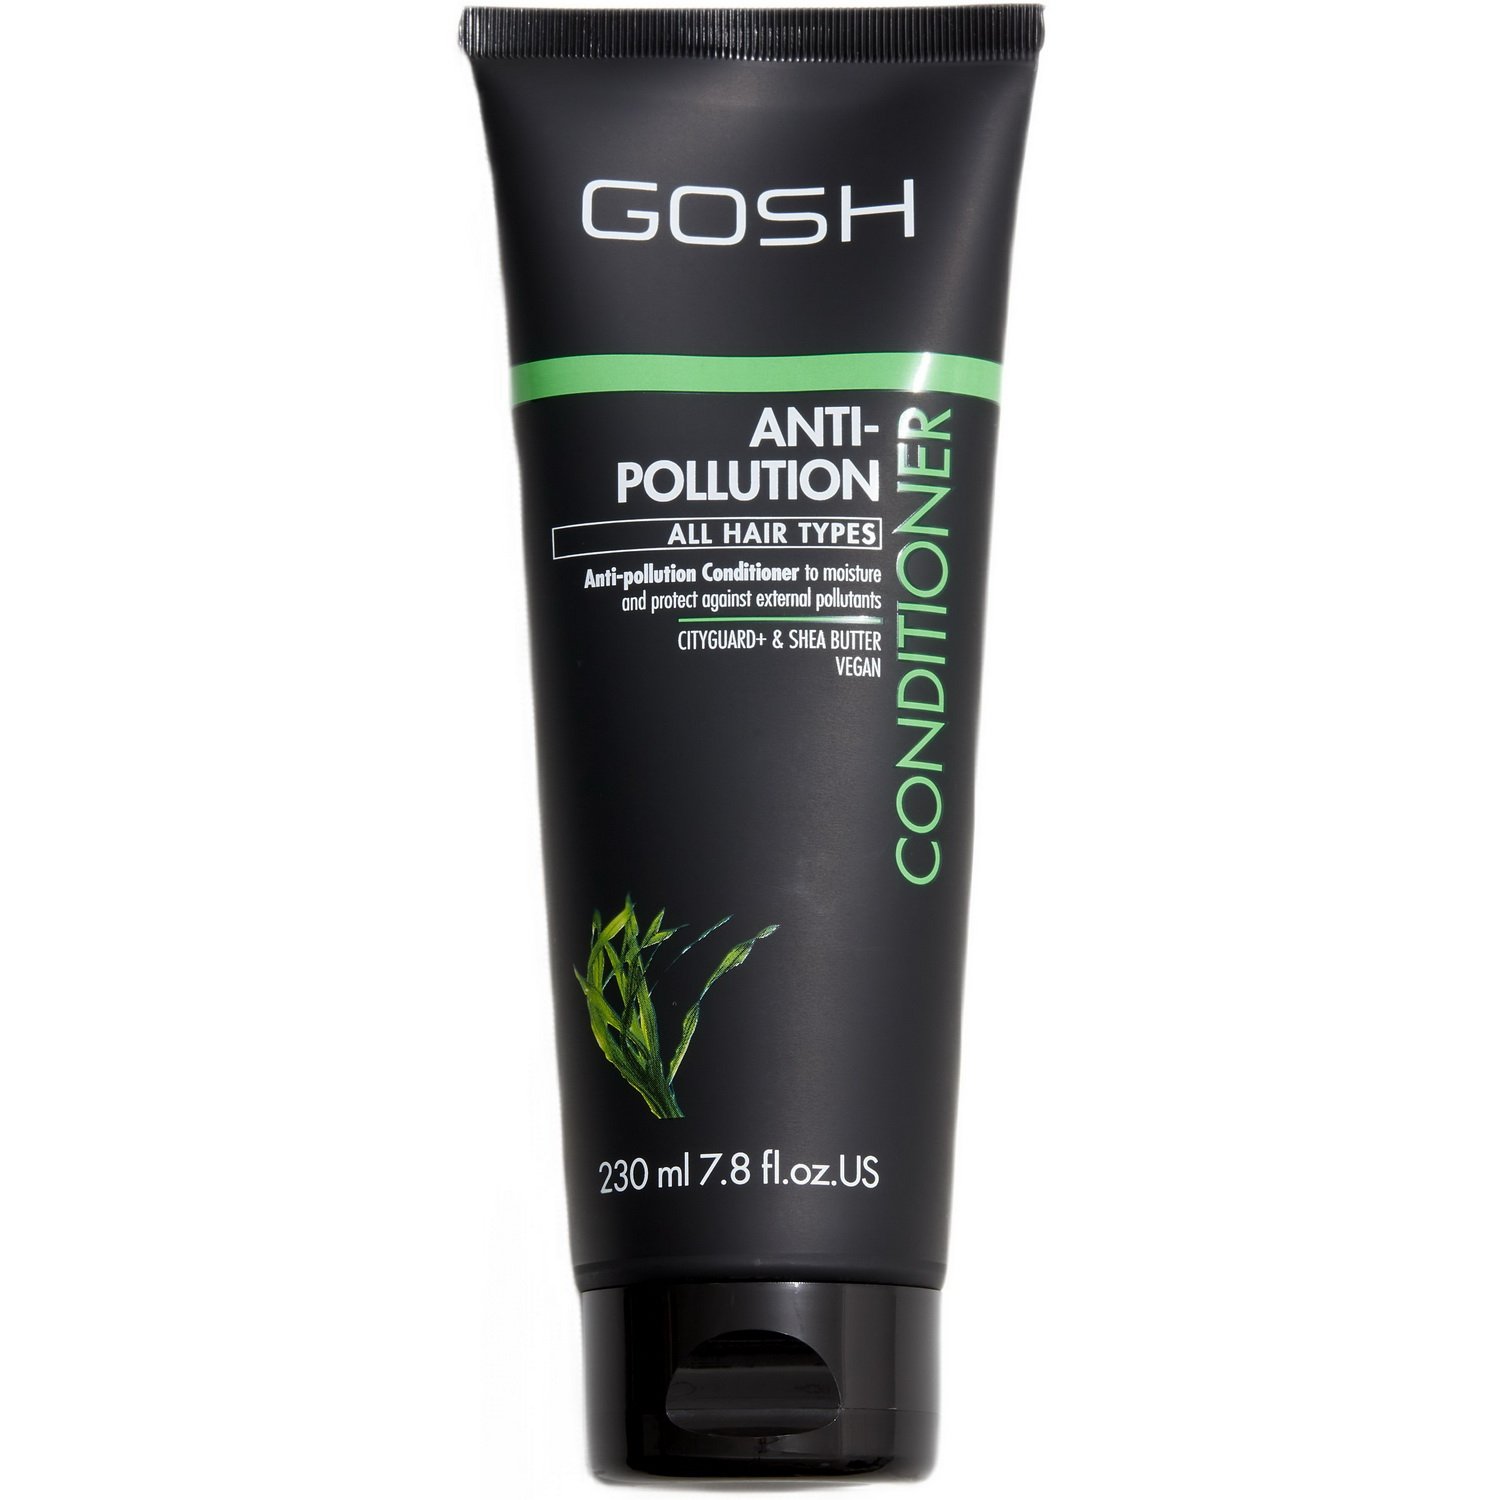 Кондиционер для волос Gosh Anti-Pollution, увлажняющий и защитный, для всех типов волос, 230 мл - фото 1